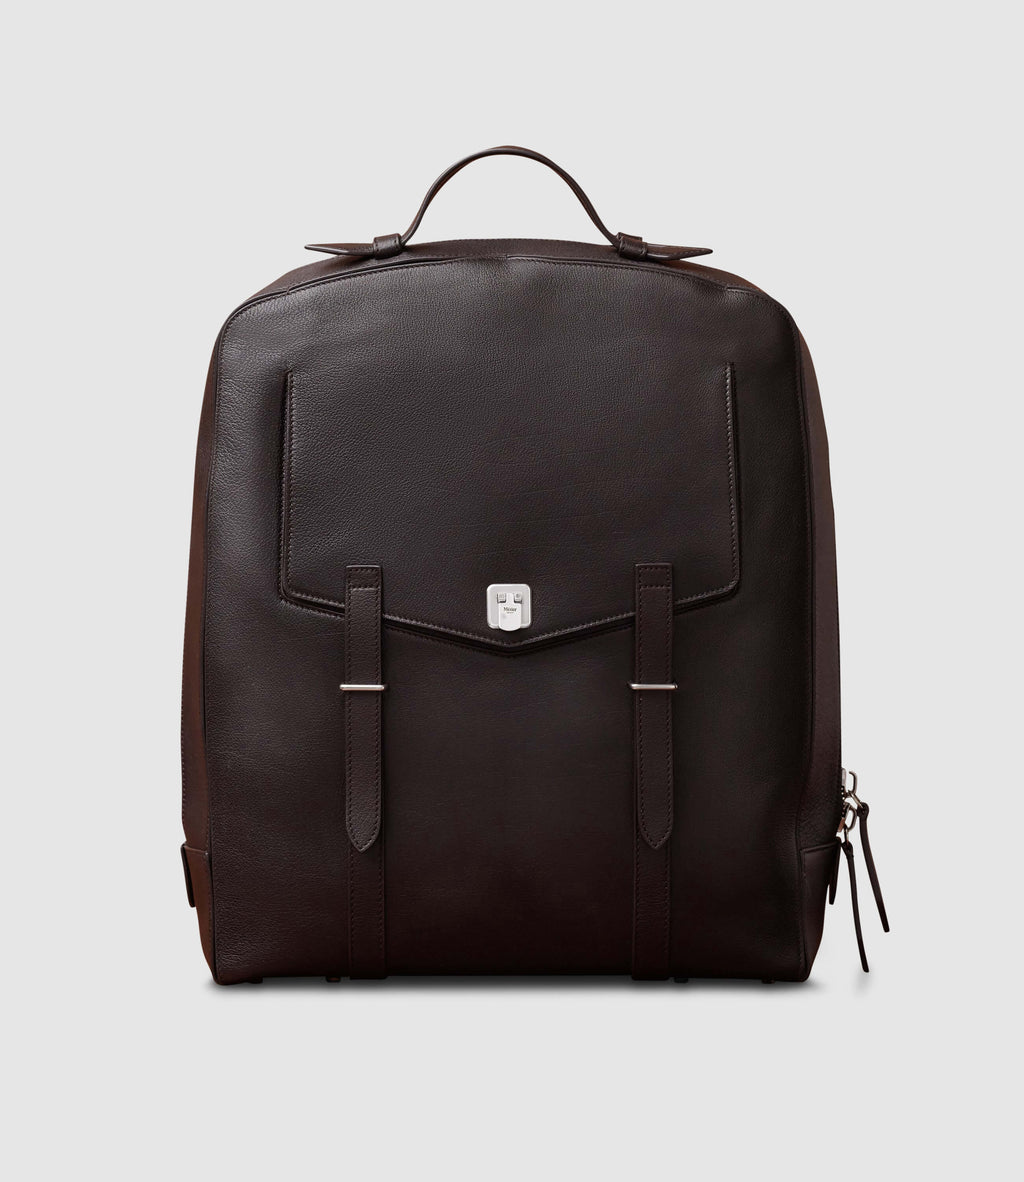 Metier - Men's Backpack - Brown Grained Leather – Métier EU